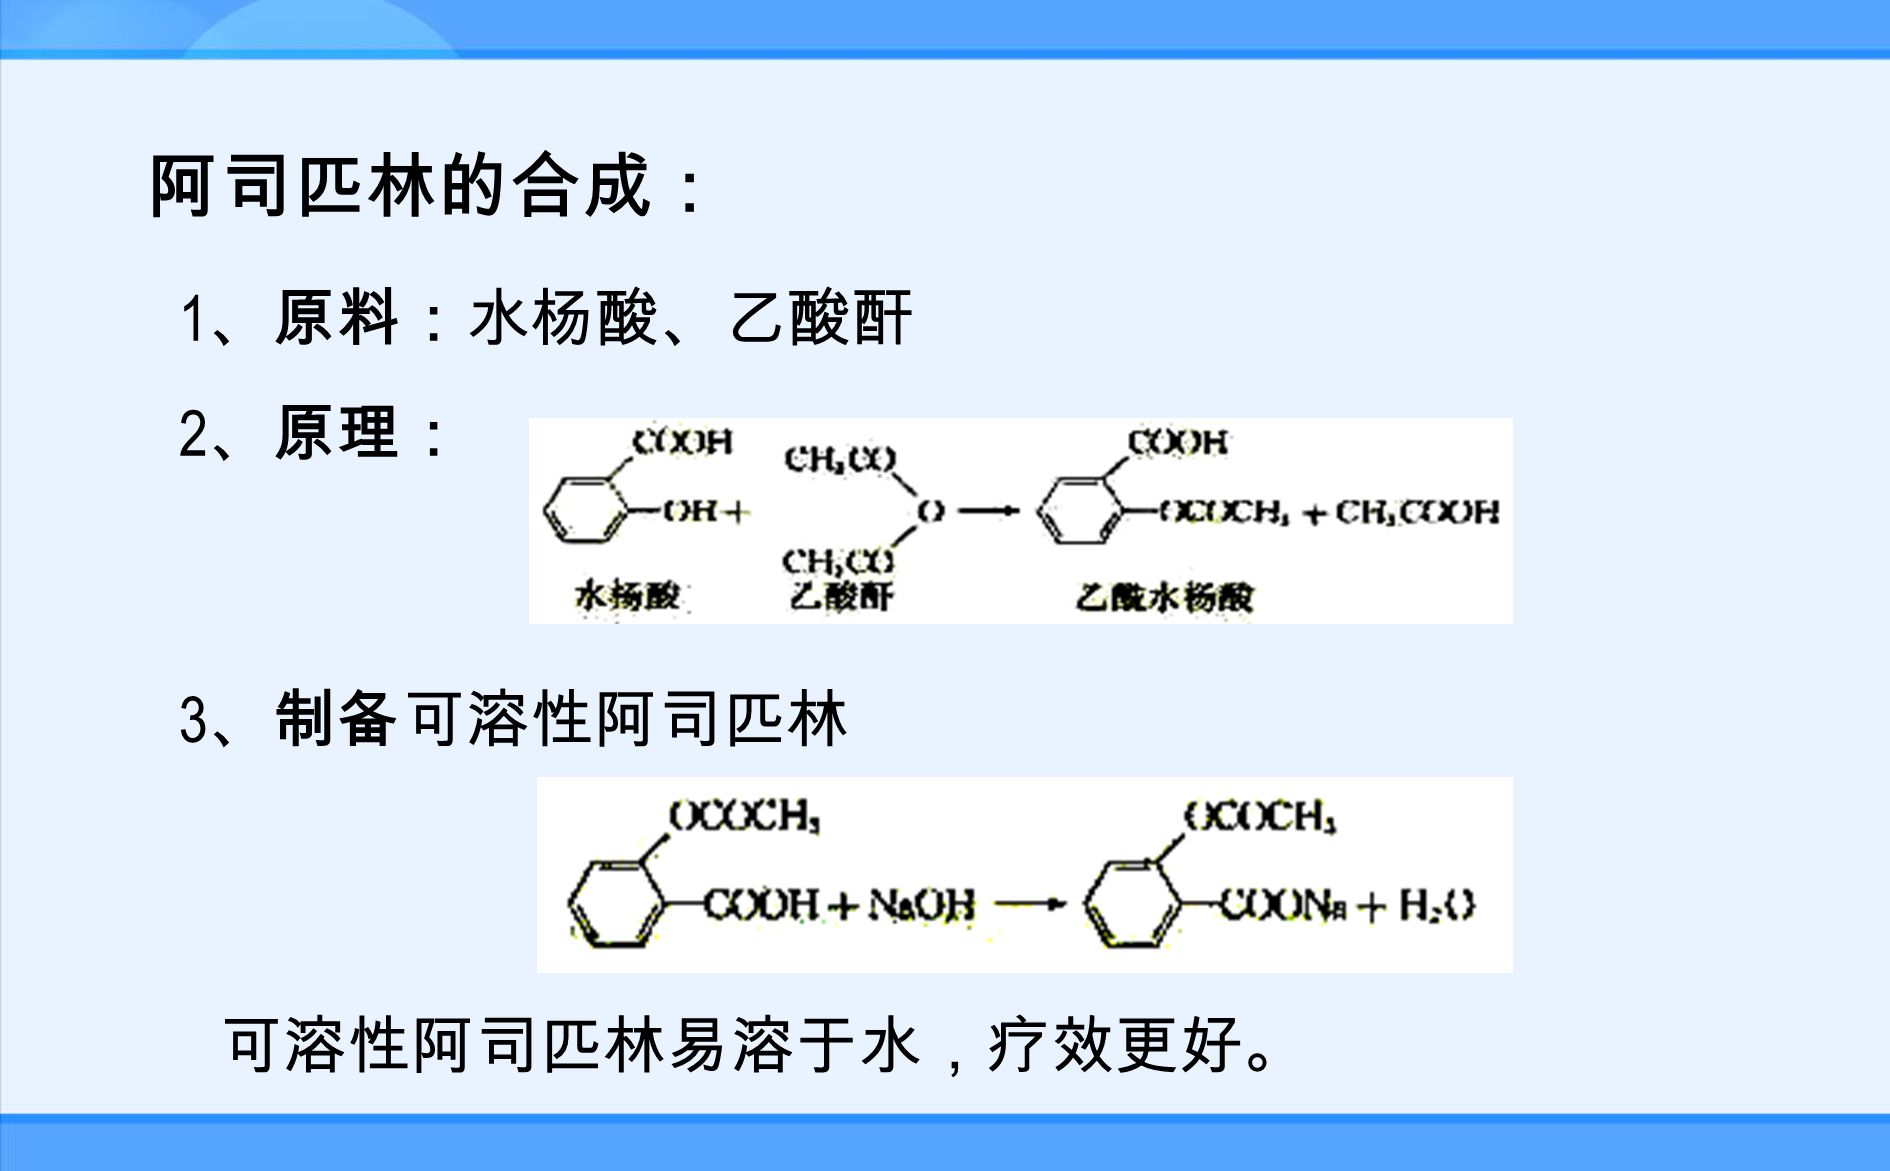 OCOCH 3 COOH 阿司匹林 学名 学名：乙酰水杨酸 结构式： 官能团： 1 、苯环 2 、羧基 3 、酯基 阿司匹林是一种有机酸，白色晶体，熔点为 135˚C ，难溶于水。 思考 : 阿斯匹林具有什么样的化学性质 .